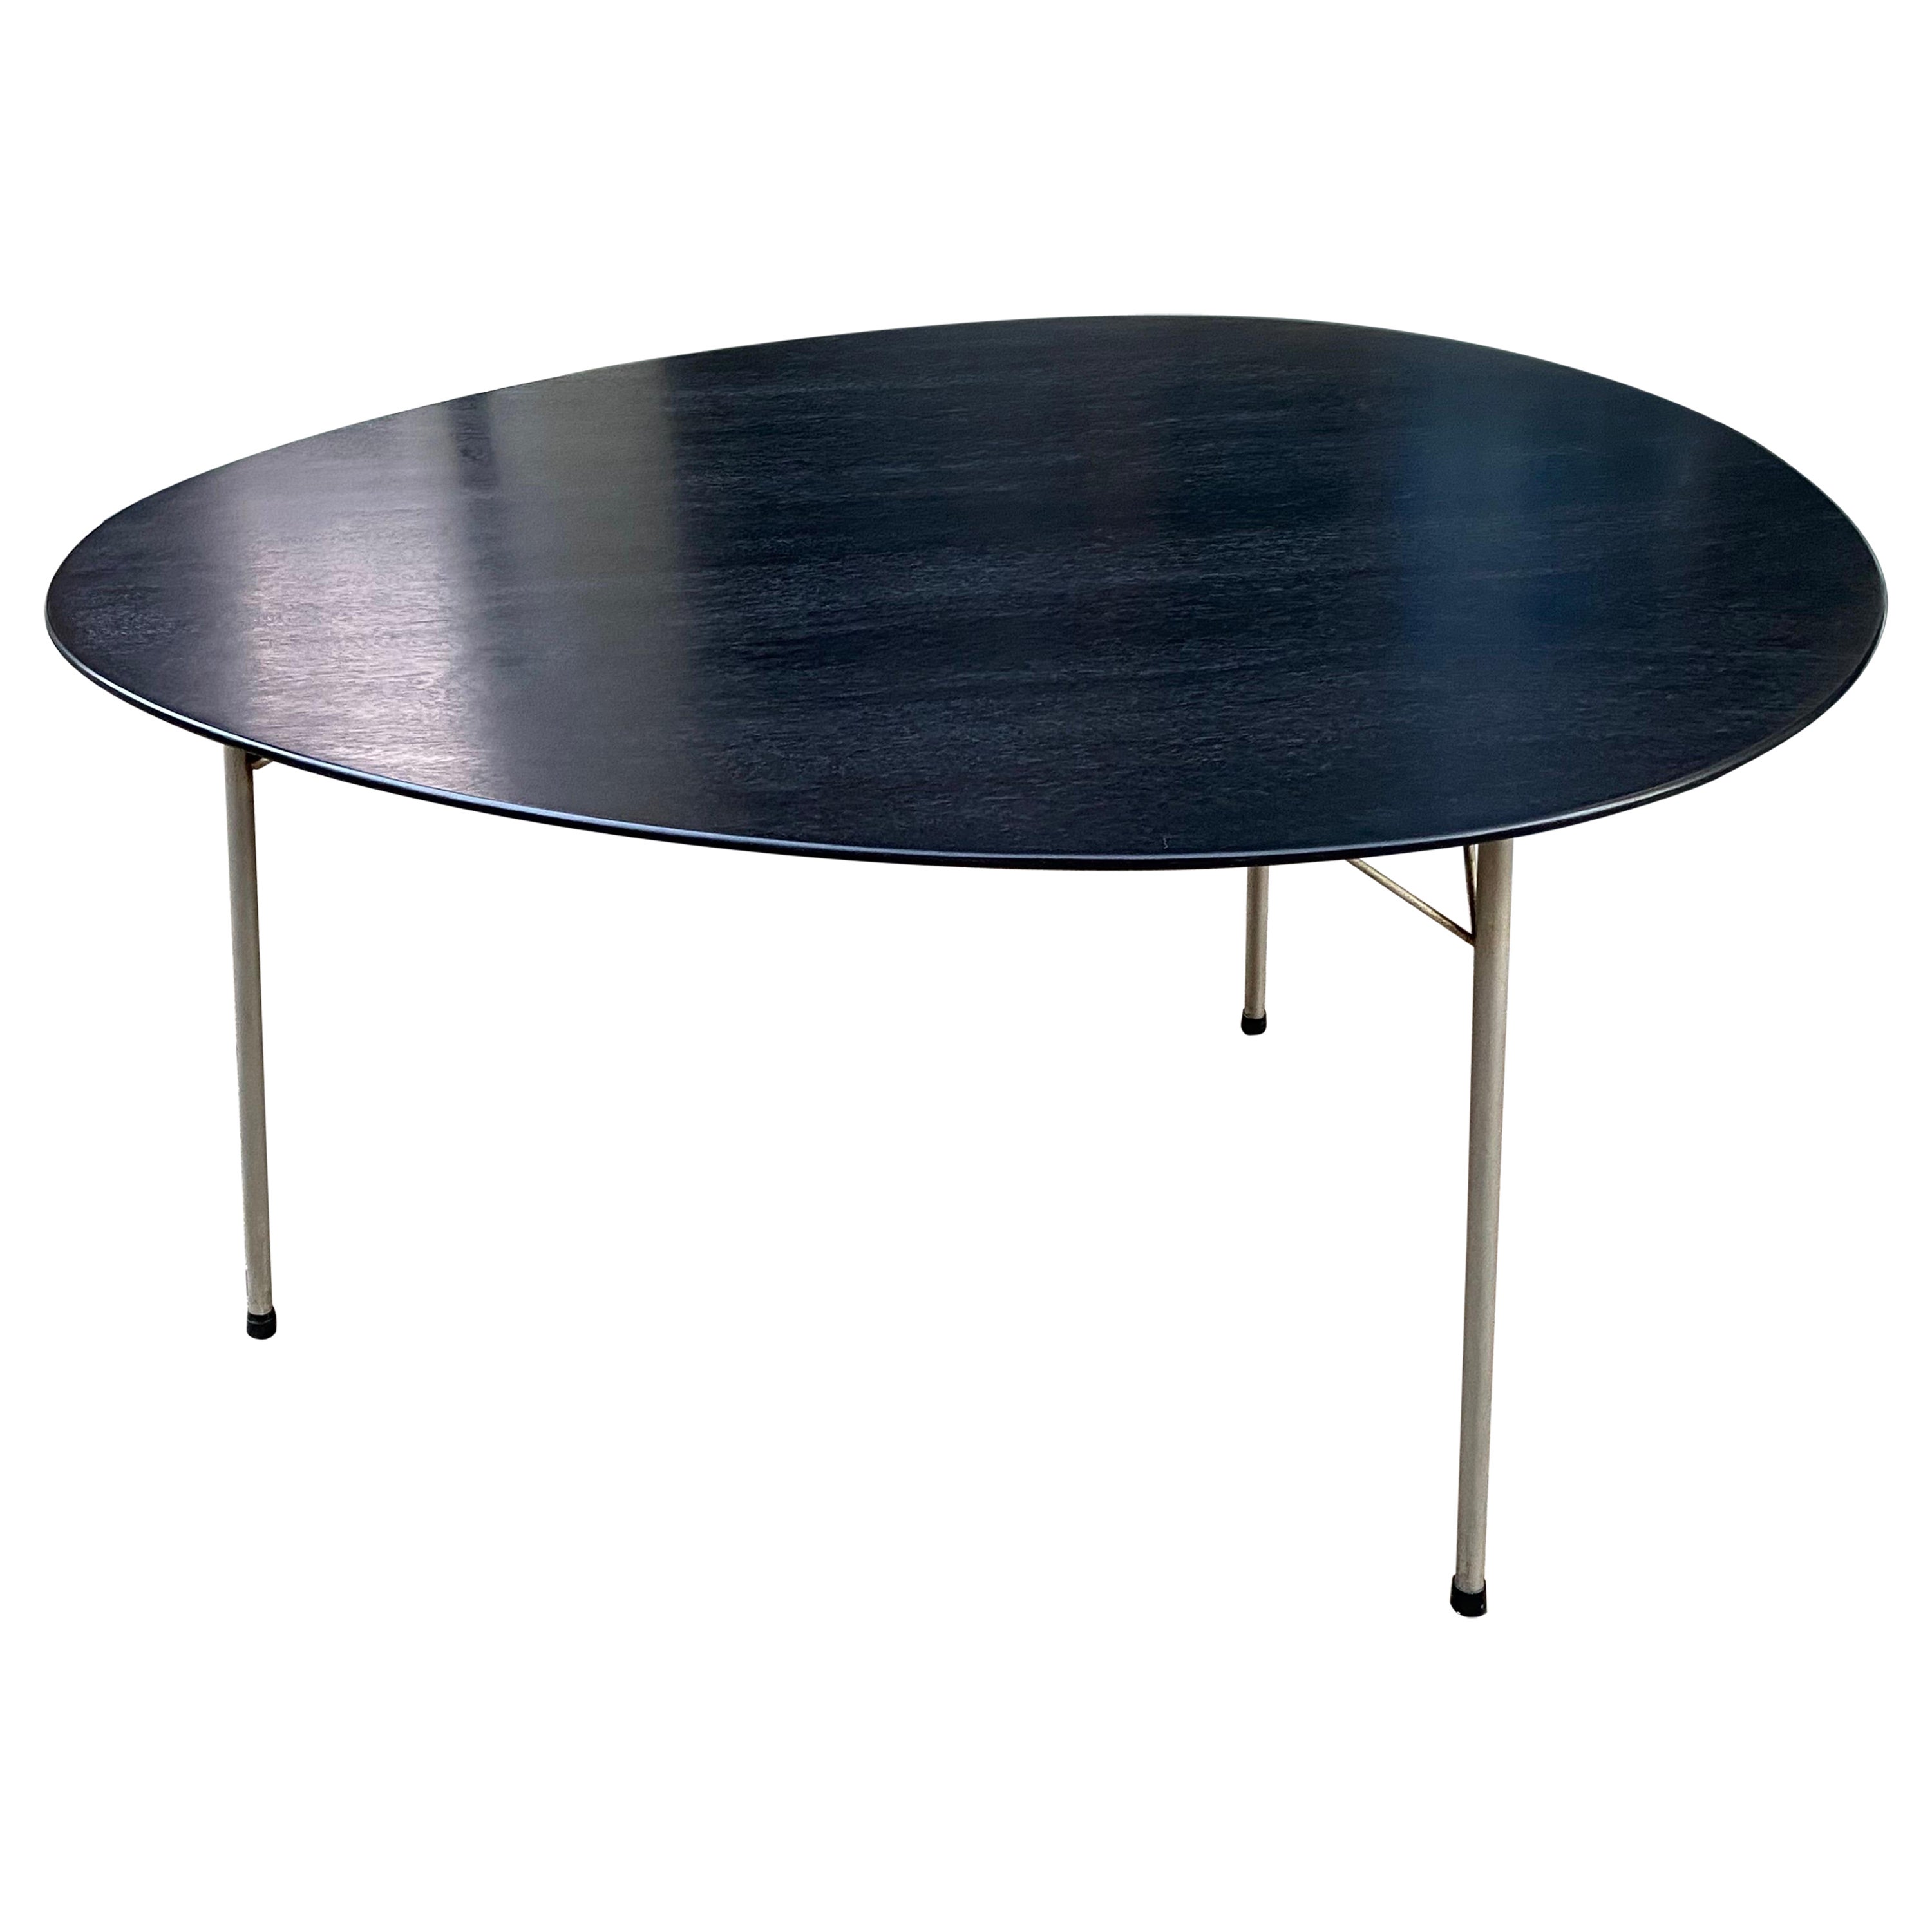 Arne Jacobsen Black Egg Table For Sale